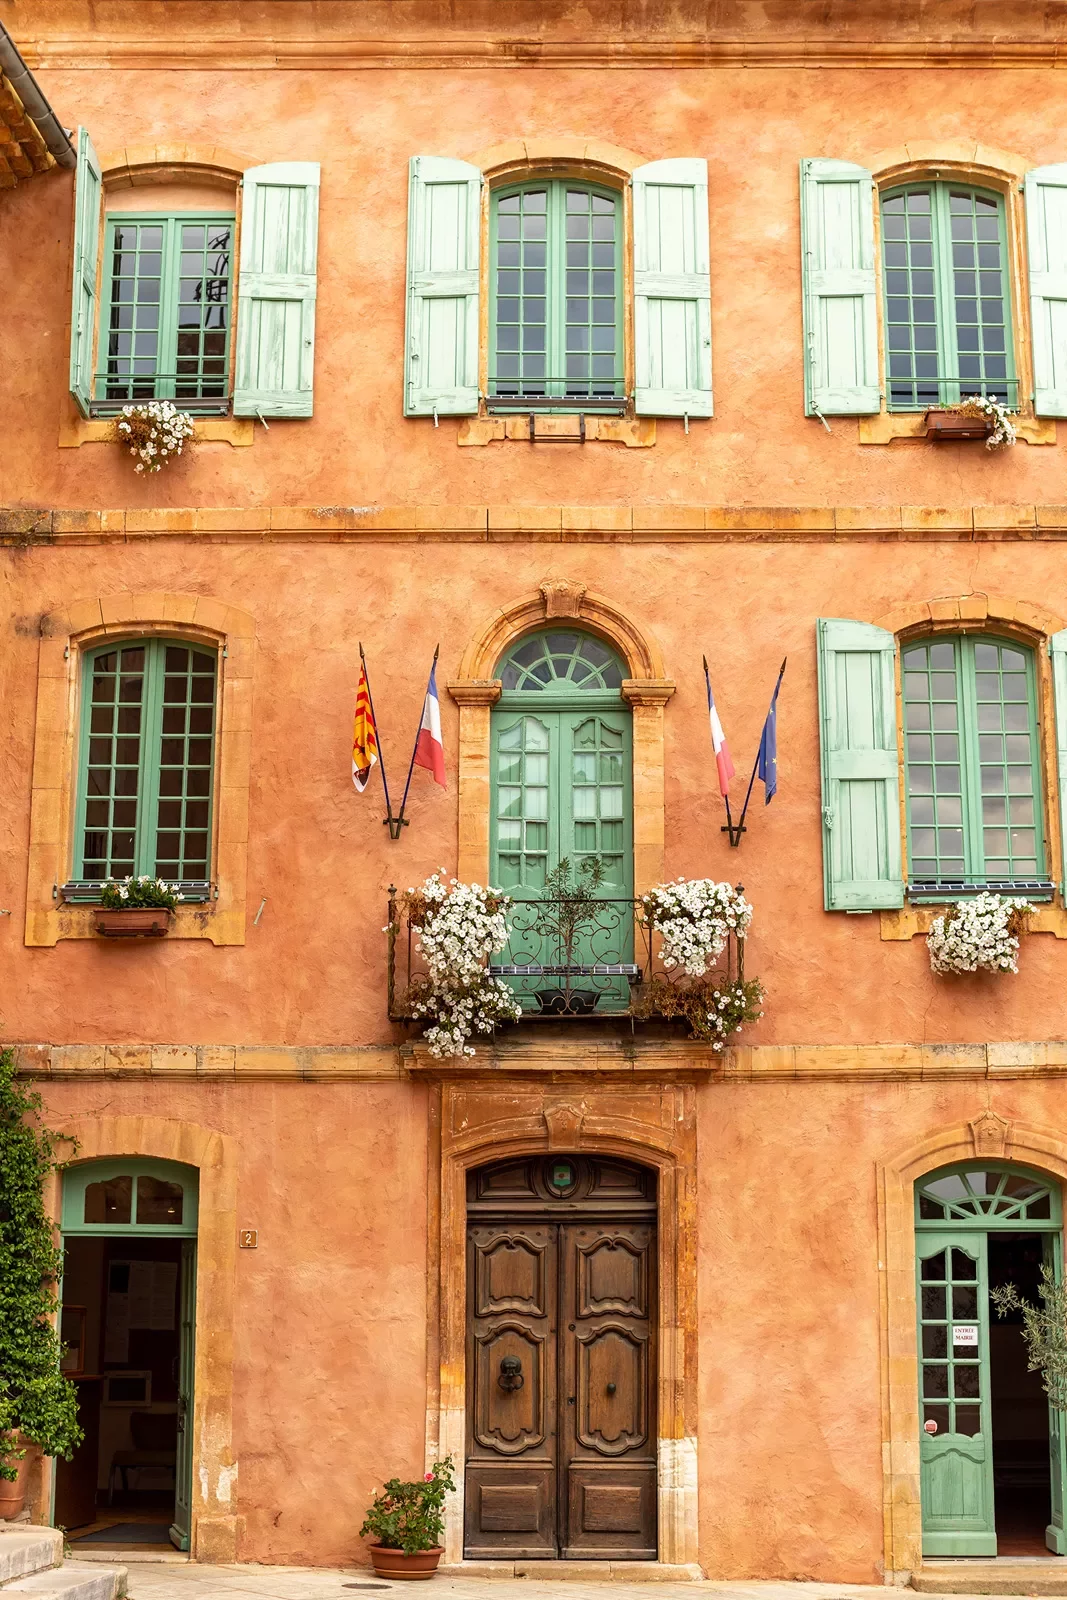 Shot of orange building, flags, balcony, windows, wood door.